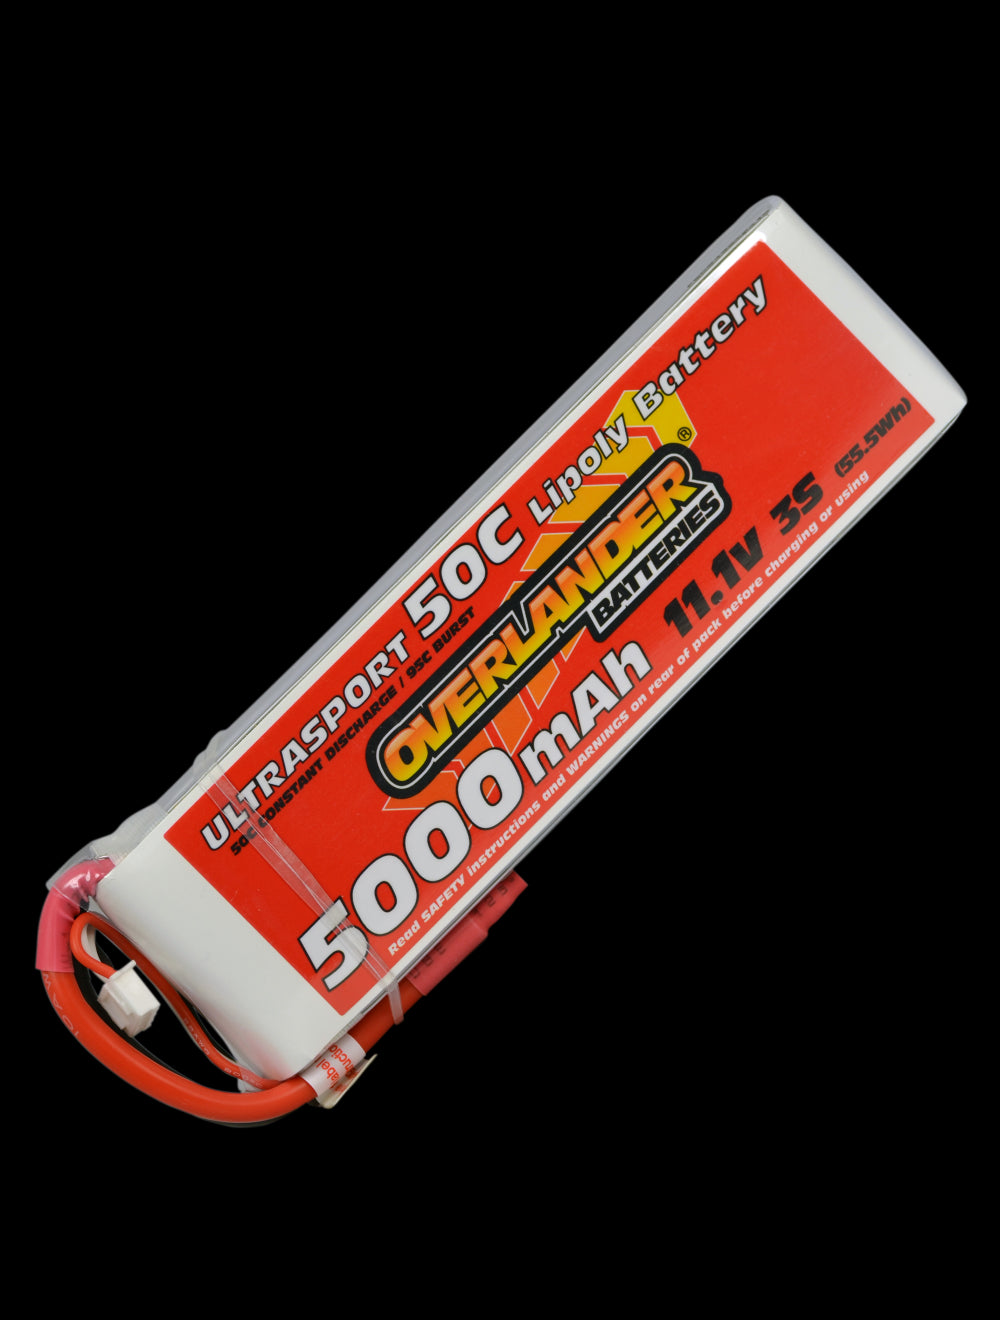 Overlander 5000mAh 11.1V 3S 50C Ultrasport LiPo Battery - EC5 Connector 2631